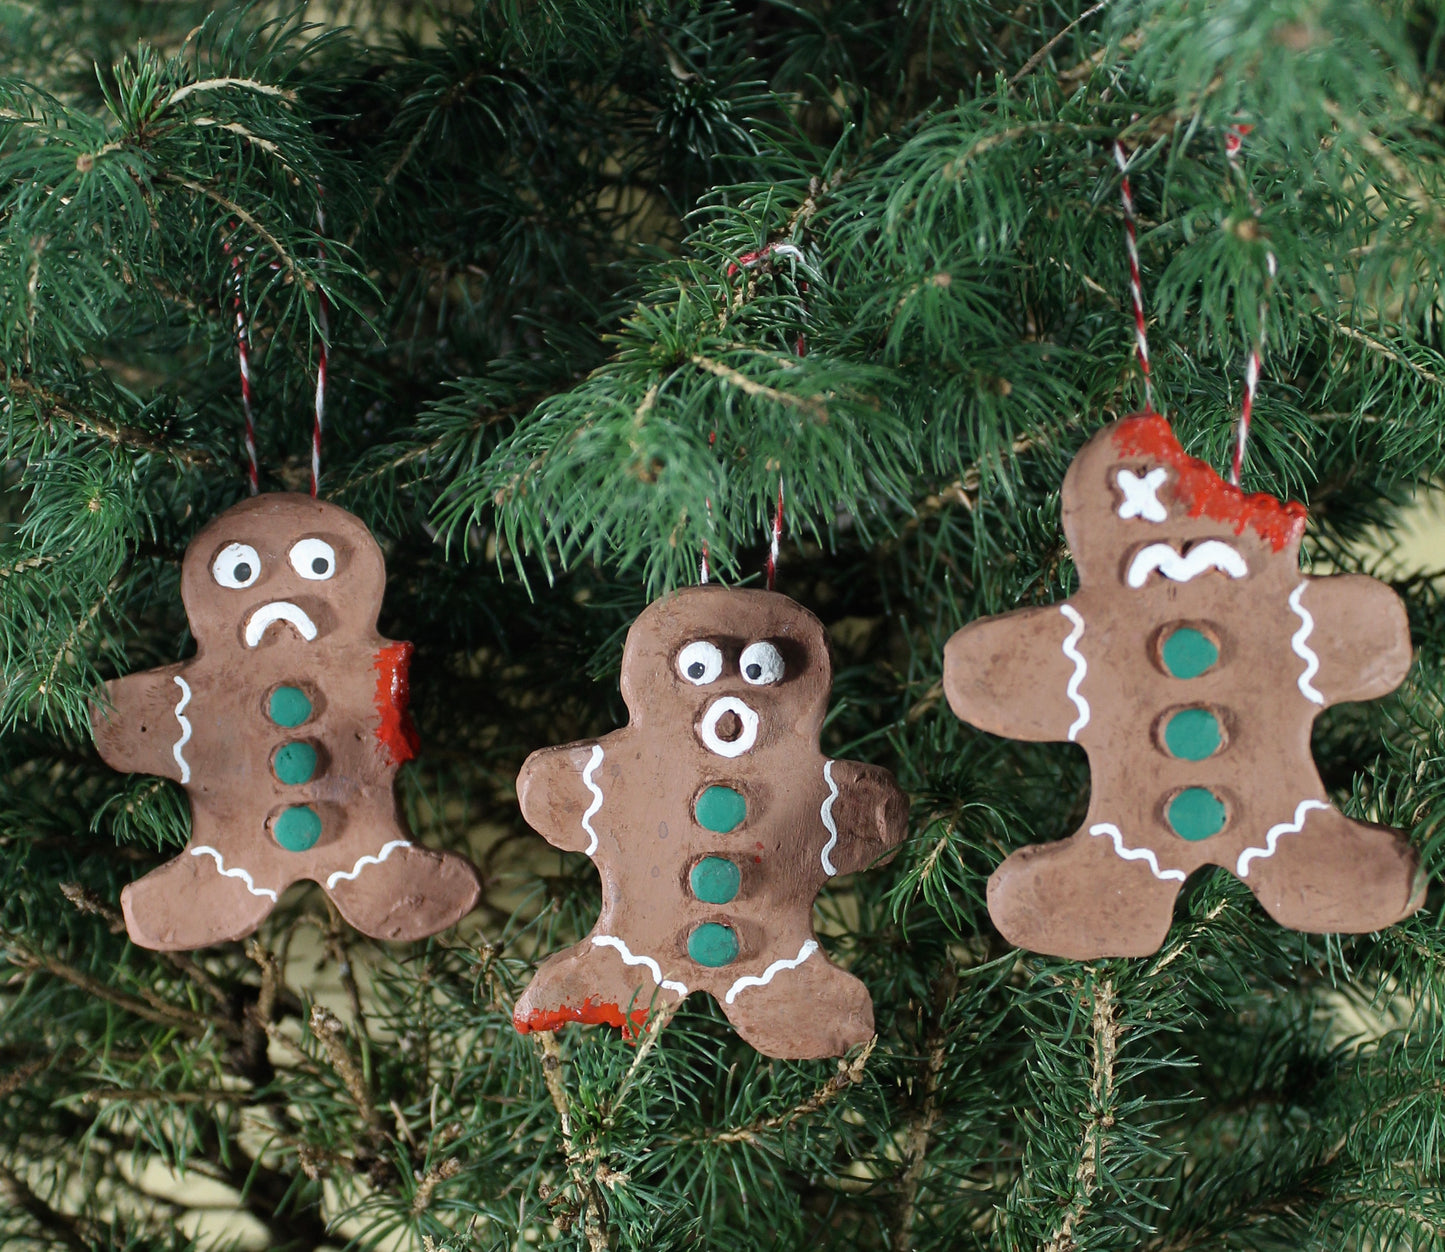 3 Ginger-Dead Men (Christmas Ornaments)